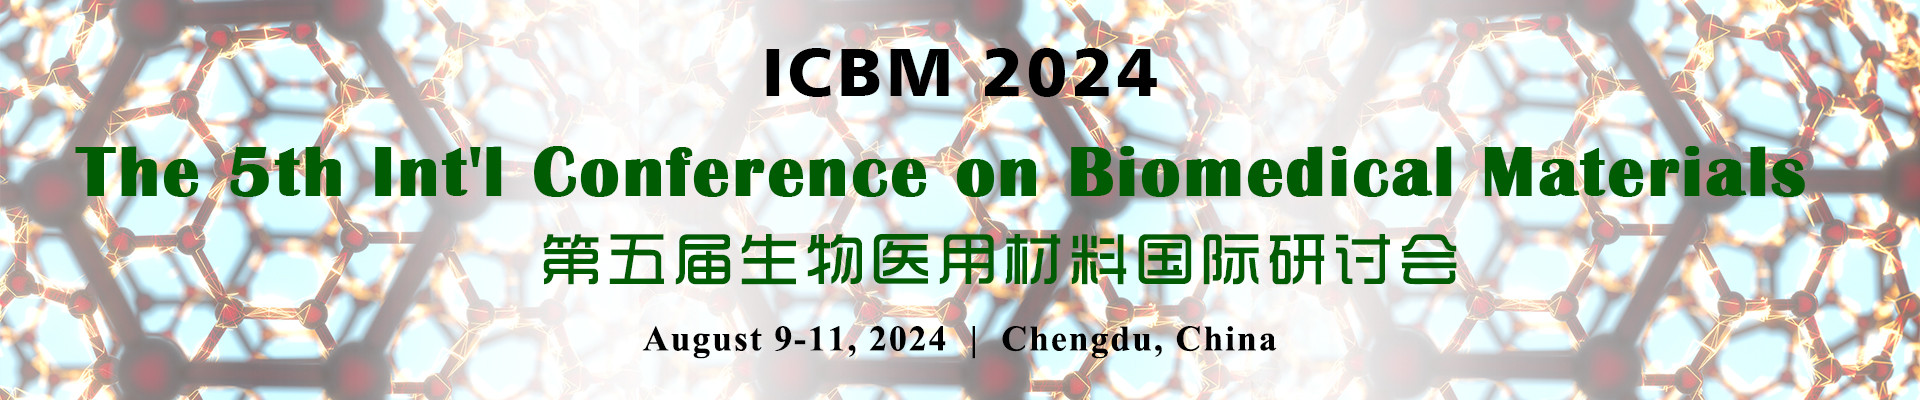 第五届生物医用材料国际研讨会ICBM 2024